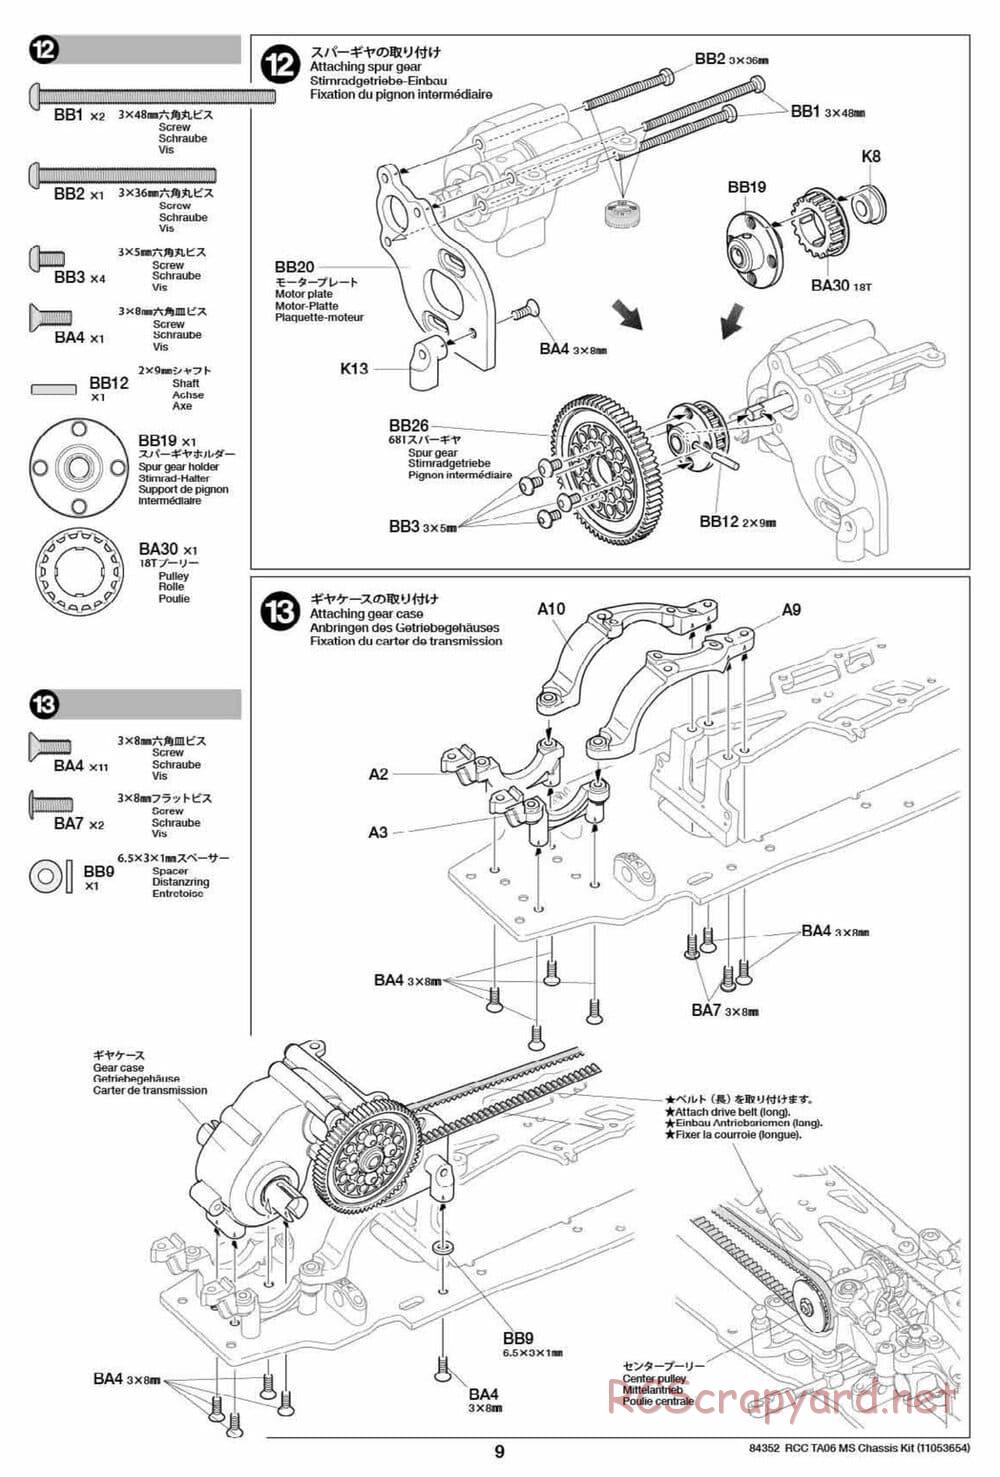 Tamiya - TA06 MS Chassis - Manual - Page 9